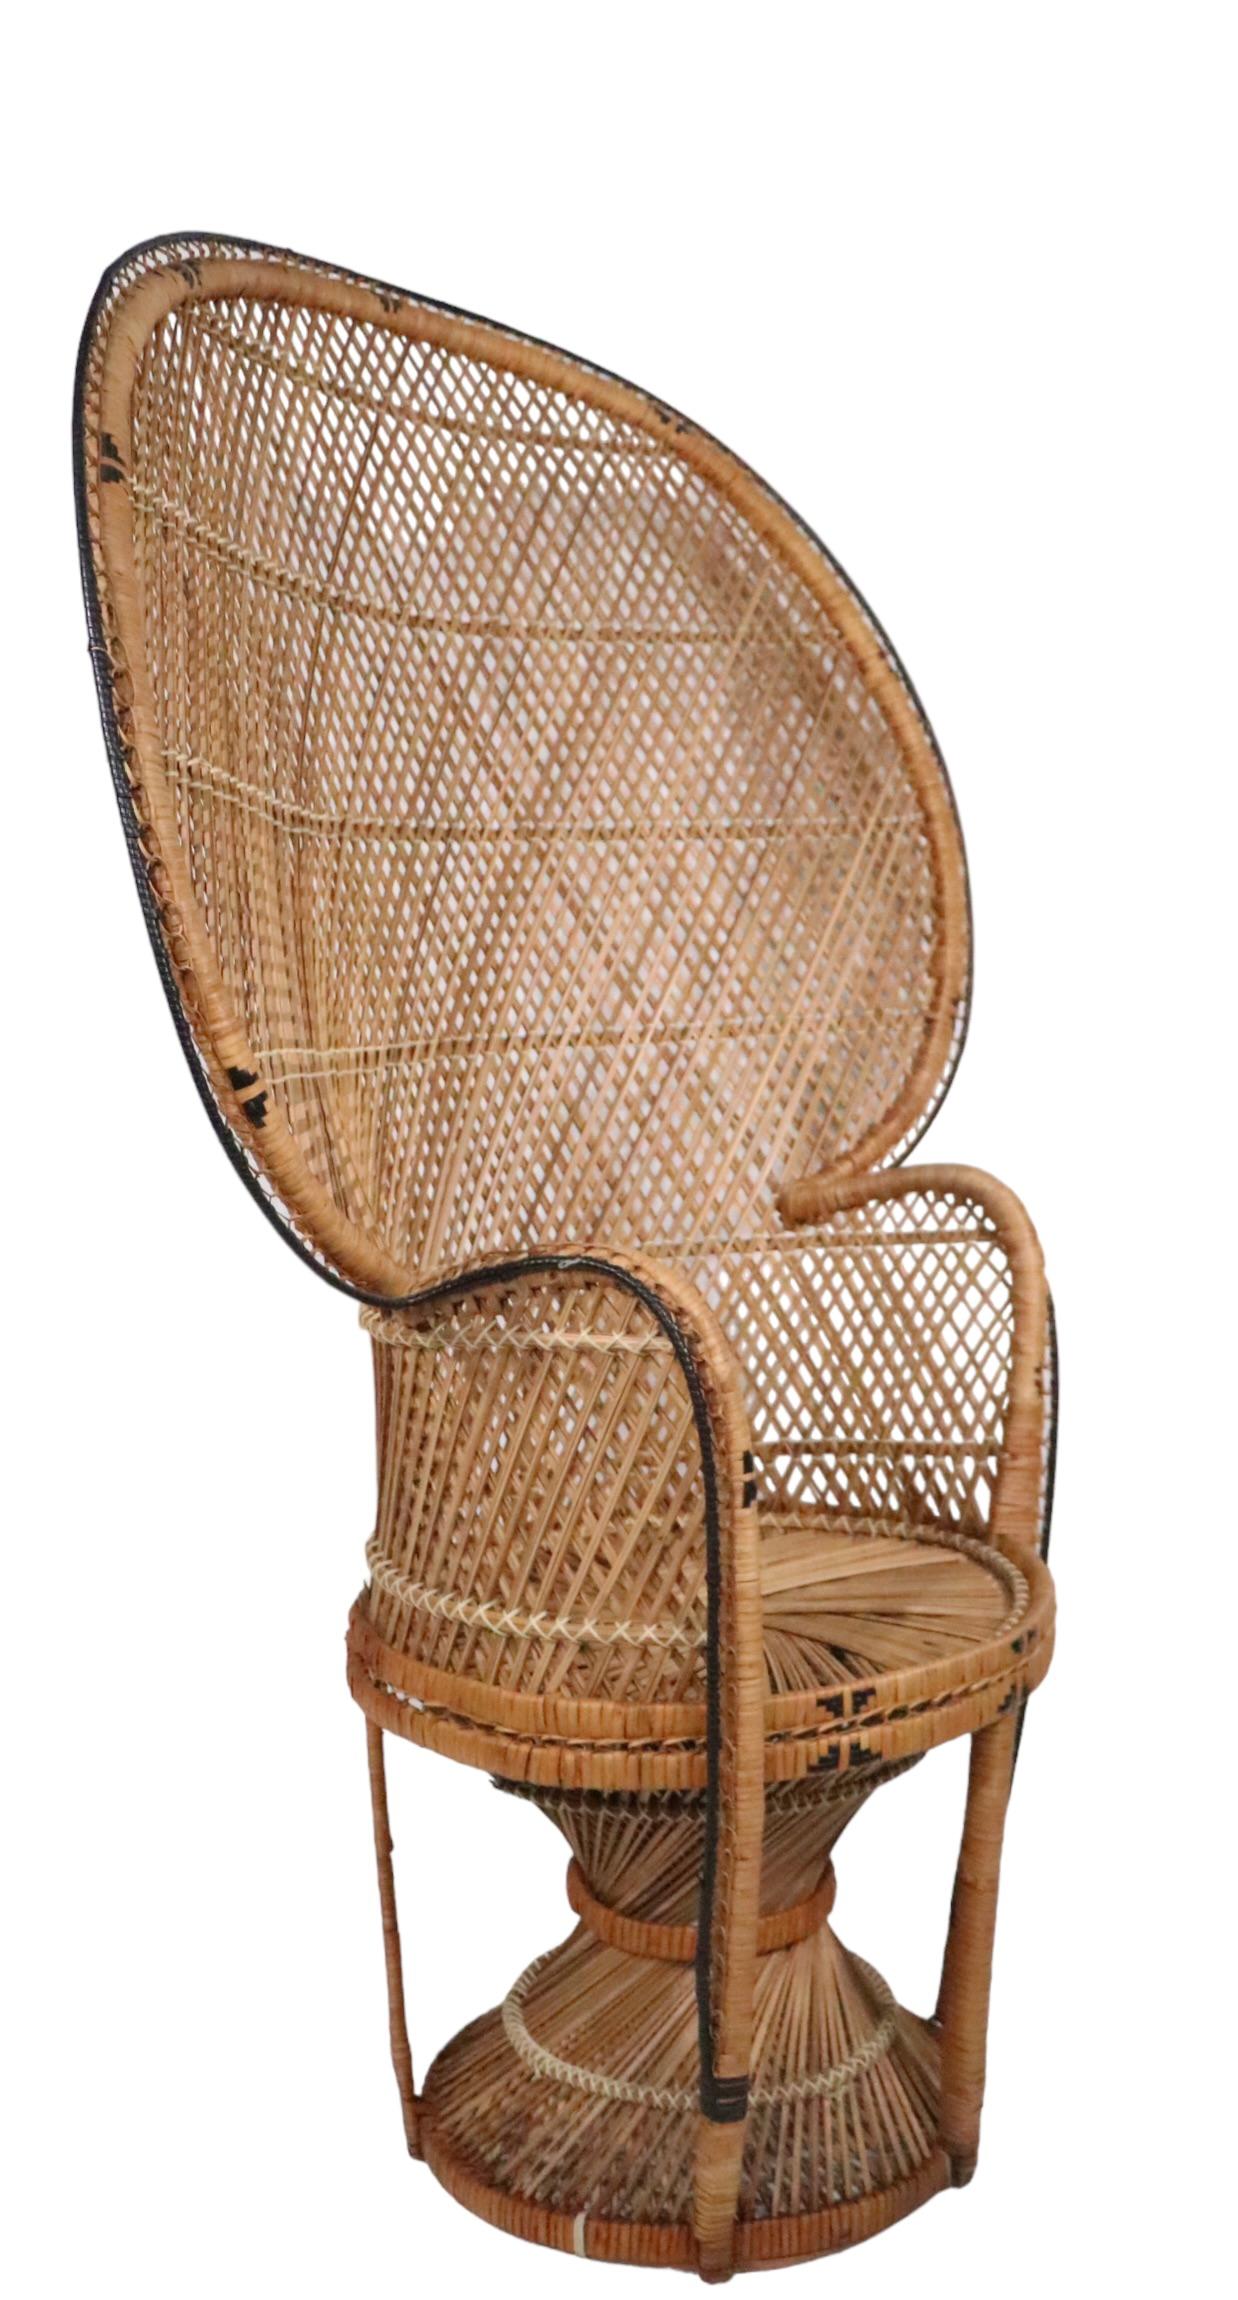 1970 wicker chair